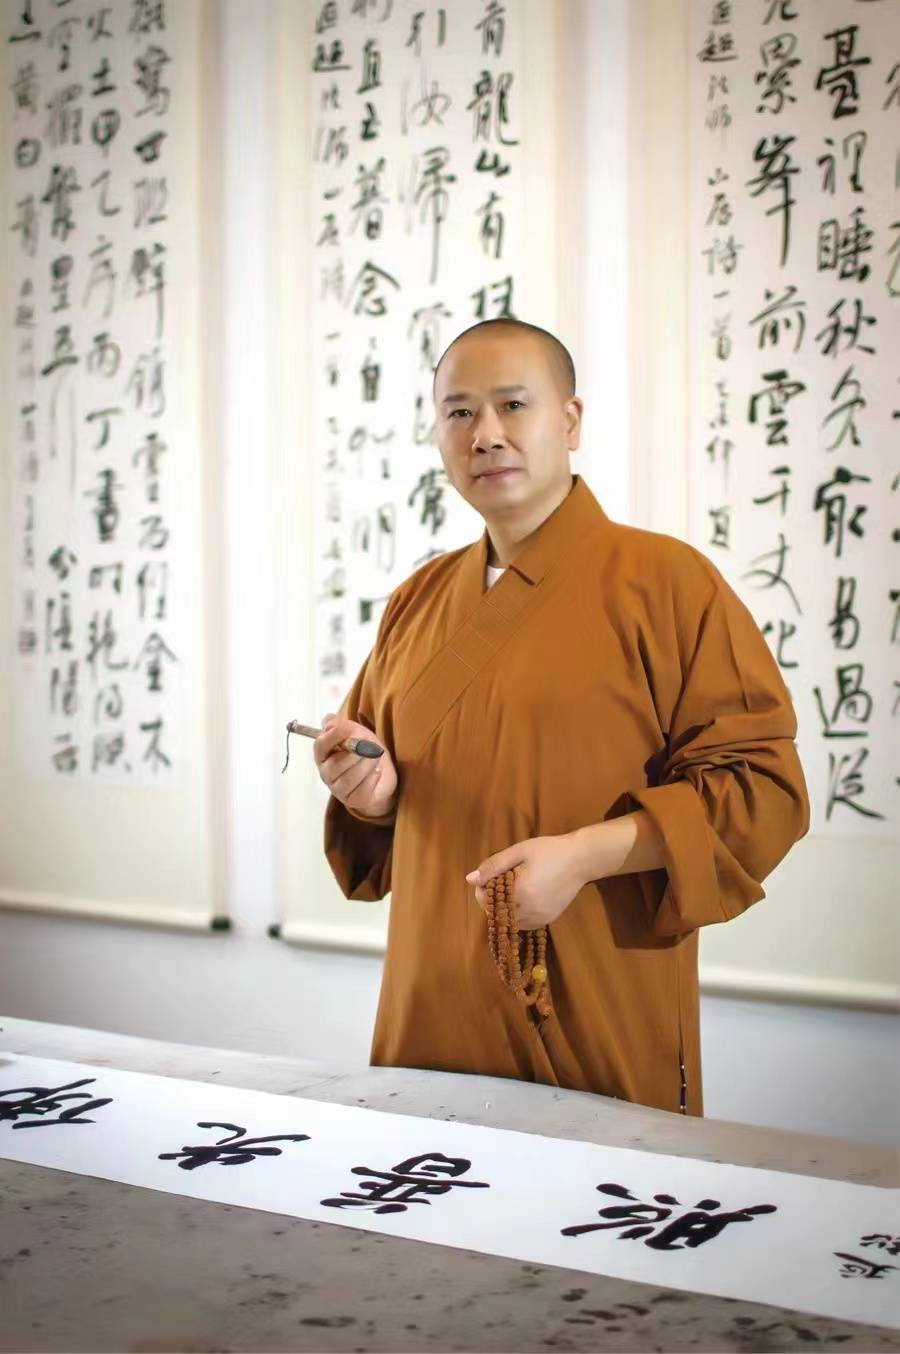 参访过中国佛教协会一诚,传印,演觉会长,以及佛学泰斗印顺导师和星云